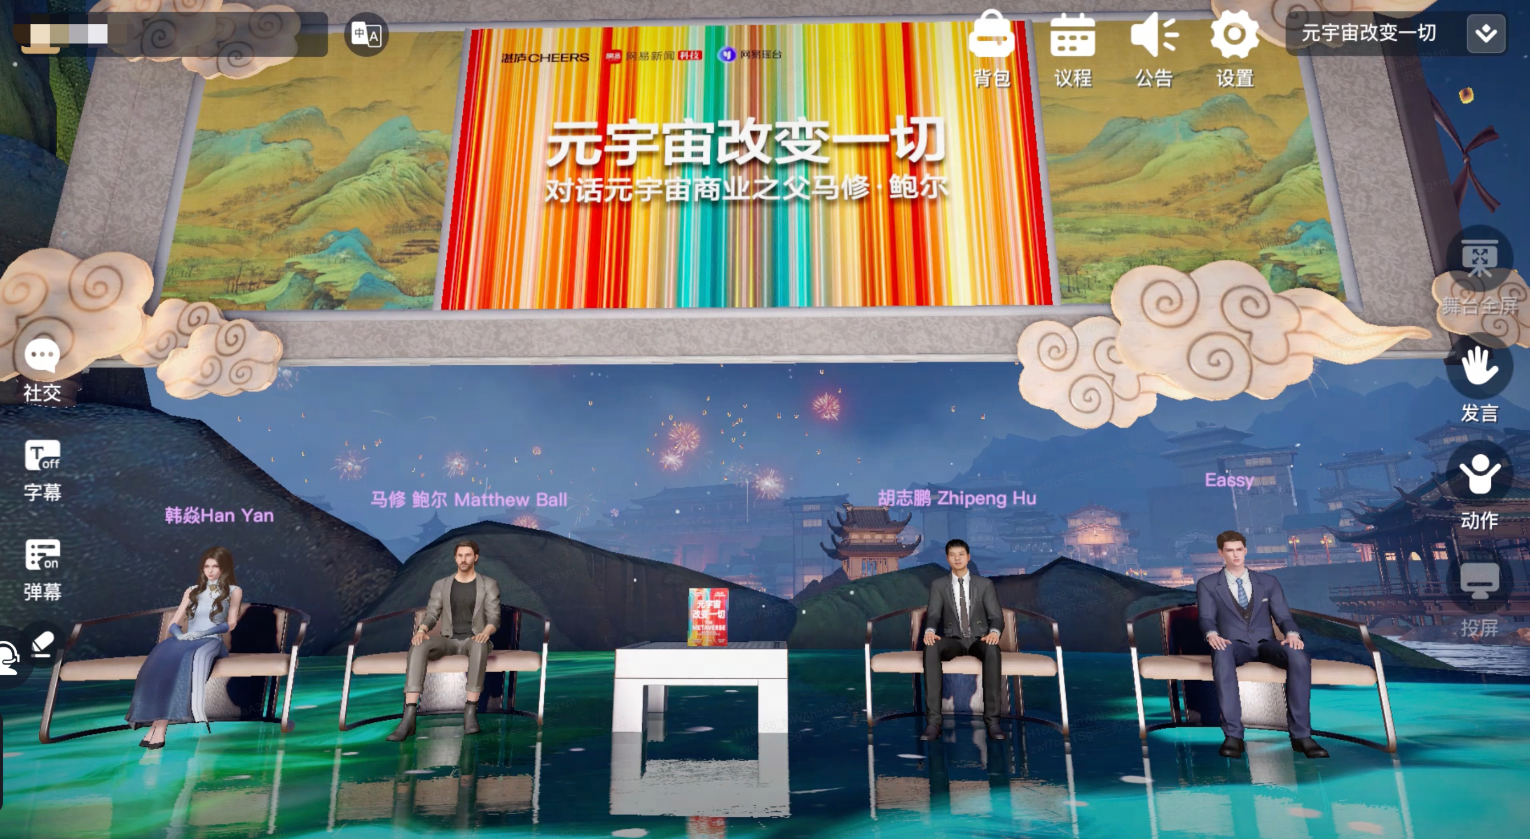 图片展示了四位嘉宾坐在虚拟演播室内，背景是中国风的山水画，氛围现代与传统结合。